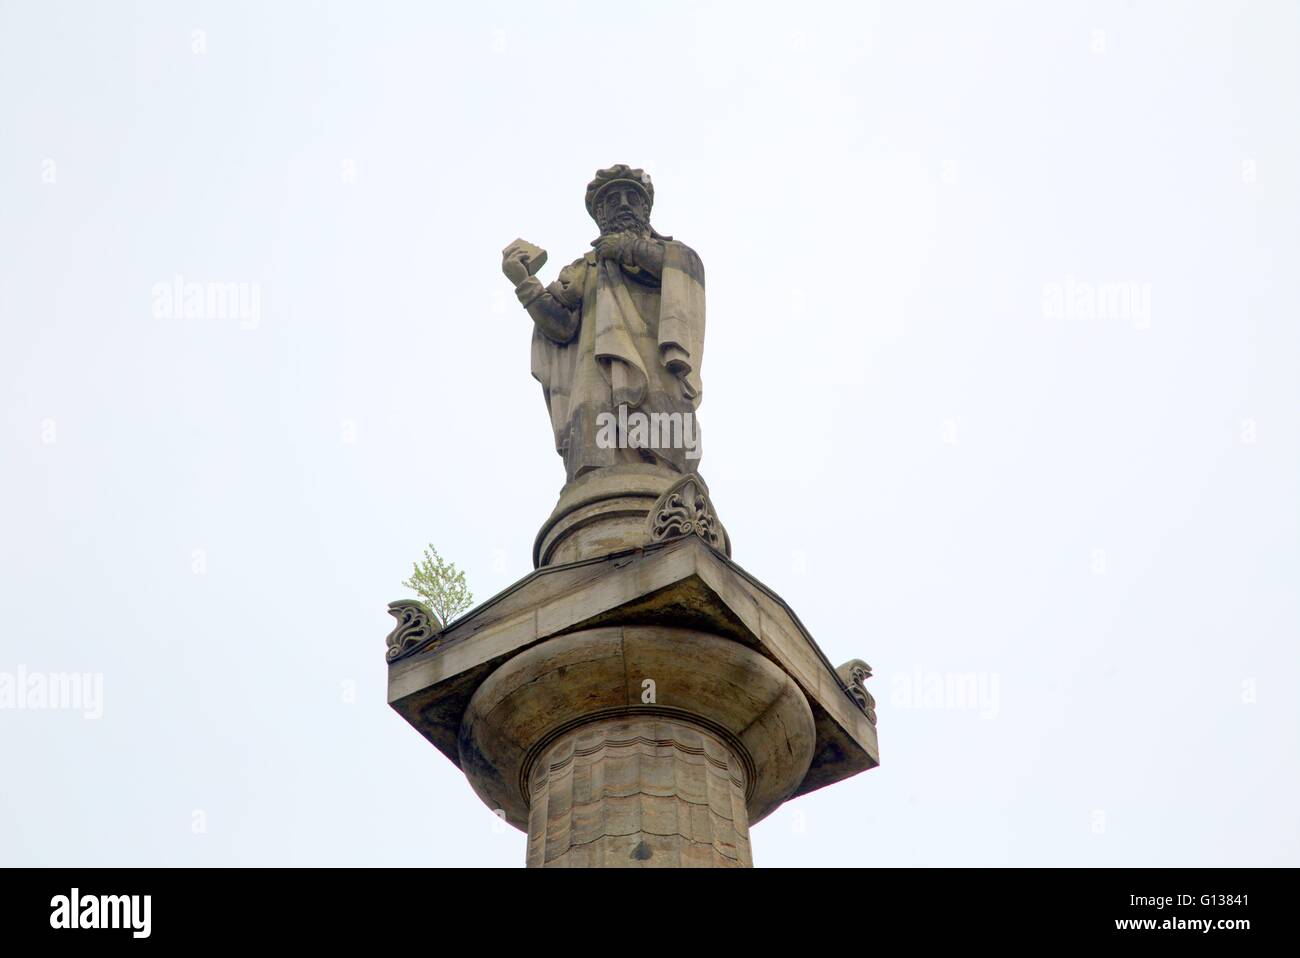 Monumento di pietre tombali statua di e in commemorazione del calvinista John Knox necropoli, Glasgow. Scozia,R.U. Foto Stock